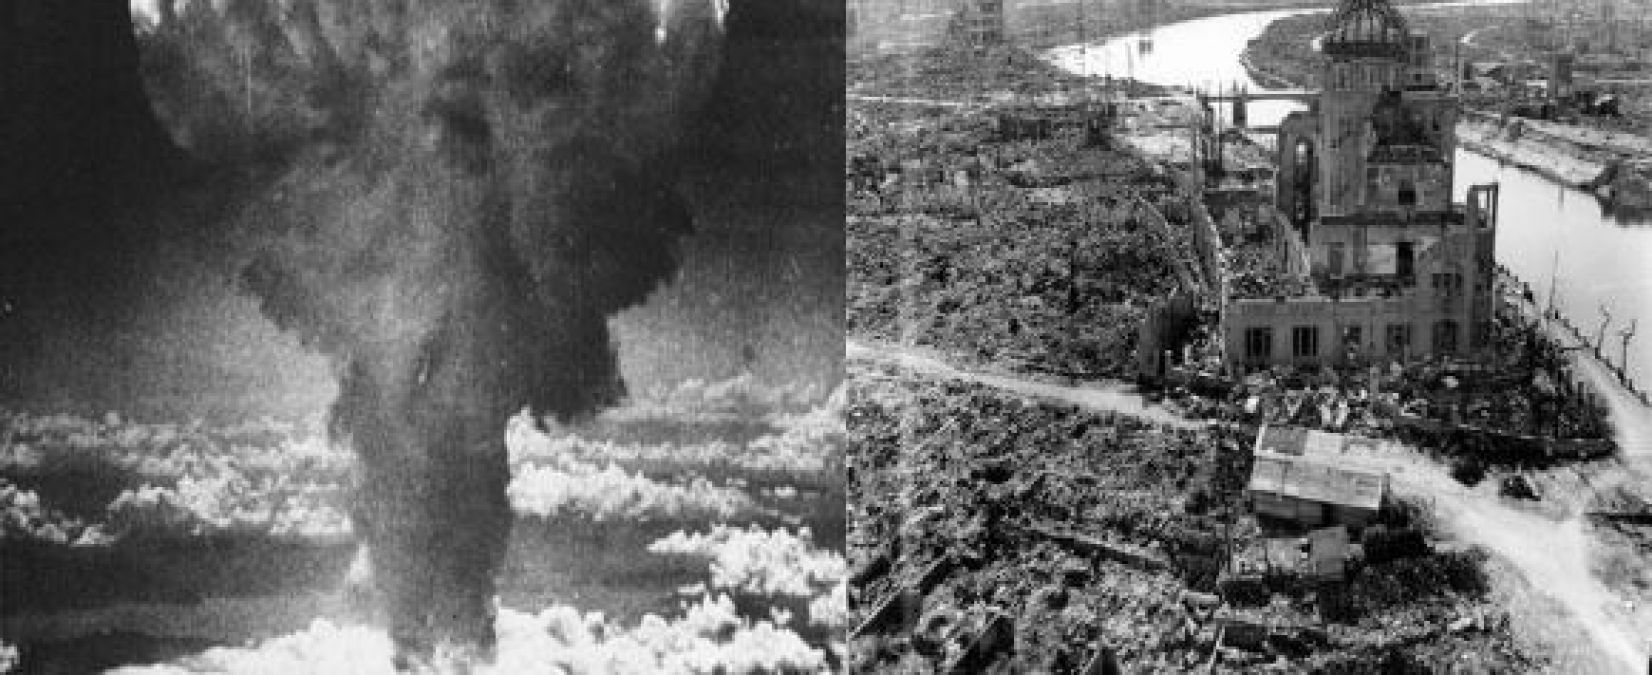 हिरोशिमा डे: आज ही आग का गोला बना था पूरा शहर, मारे गए थे 80 हजार लोग